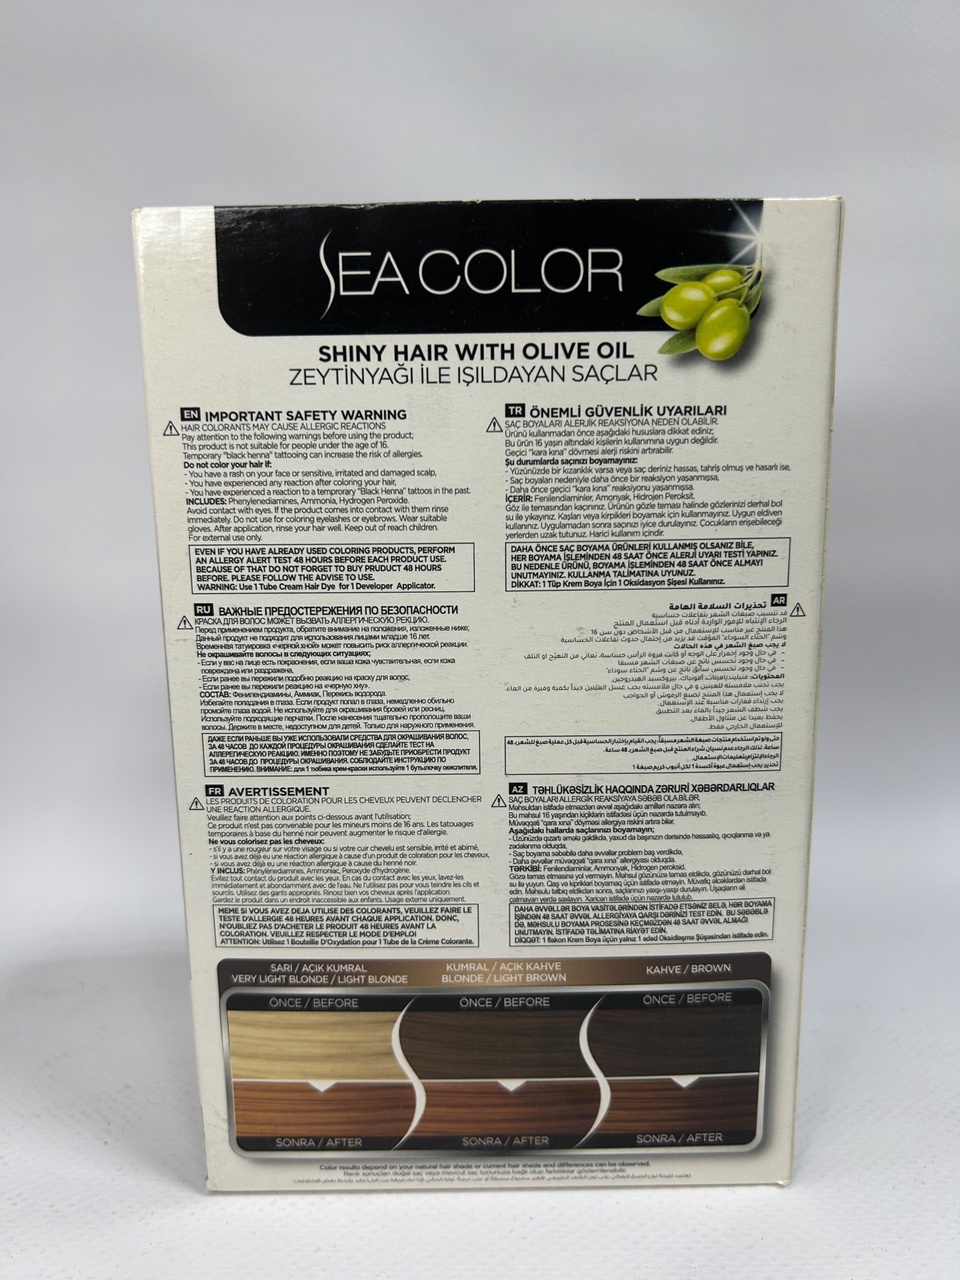 Sea Color 7.43 Краска д/волос «Насыщенная медь» - 300 ₽, заказать онлайн.